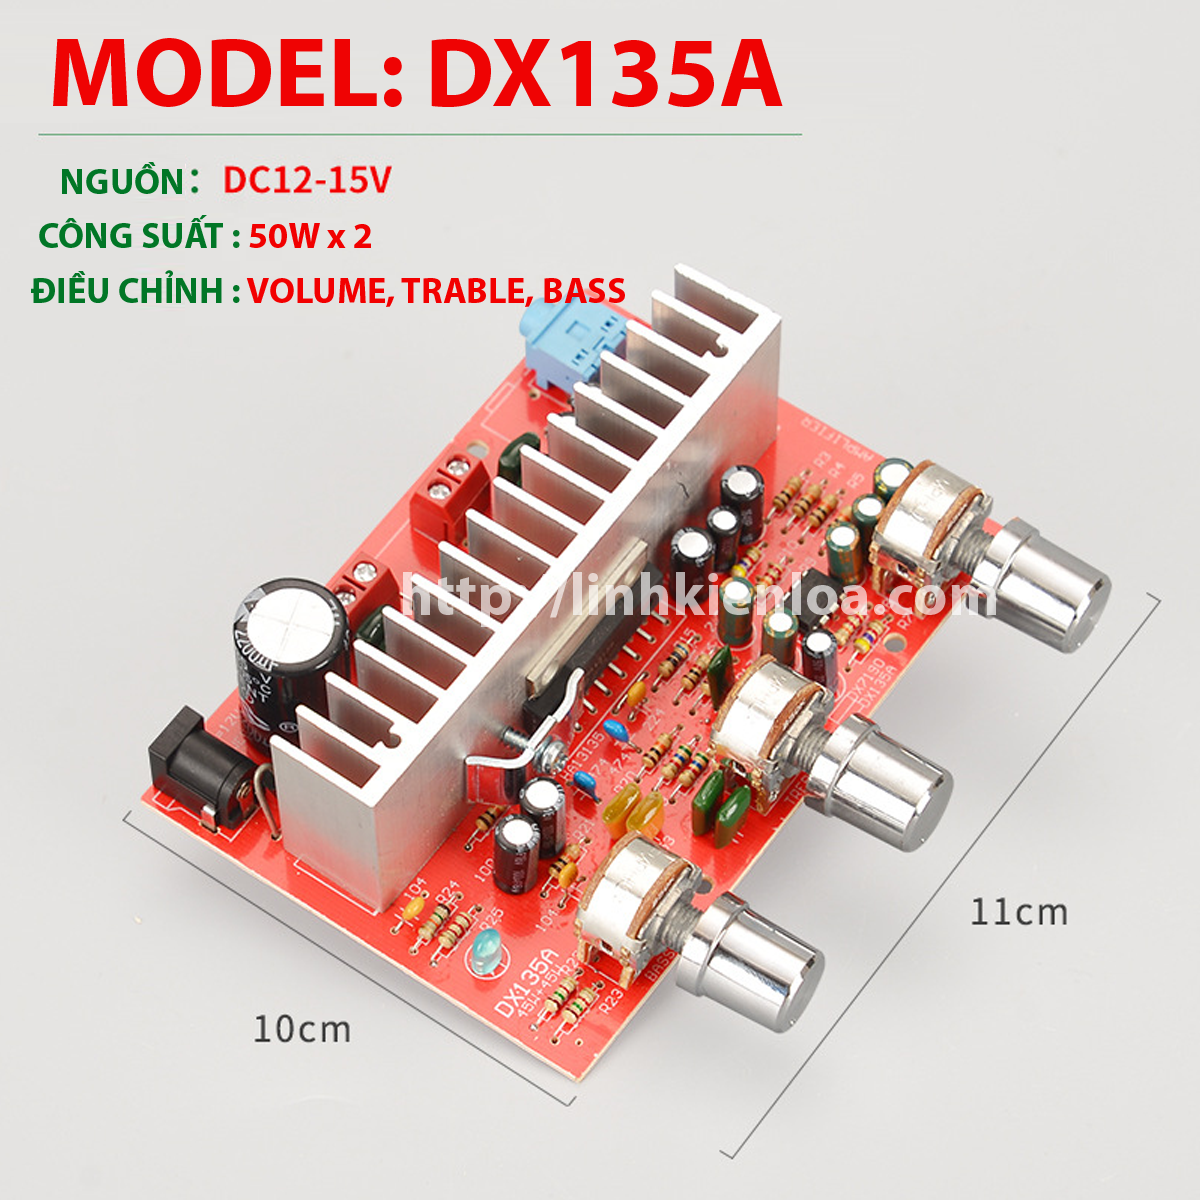 Mạch khuếch đại công suất DX-135A - Sử dụng IC HA-13135 Công suất 50W x 2- Nguồn DC12V - Dùng độ loa kéo karaoke Ampli DIY tự chế .v.v...